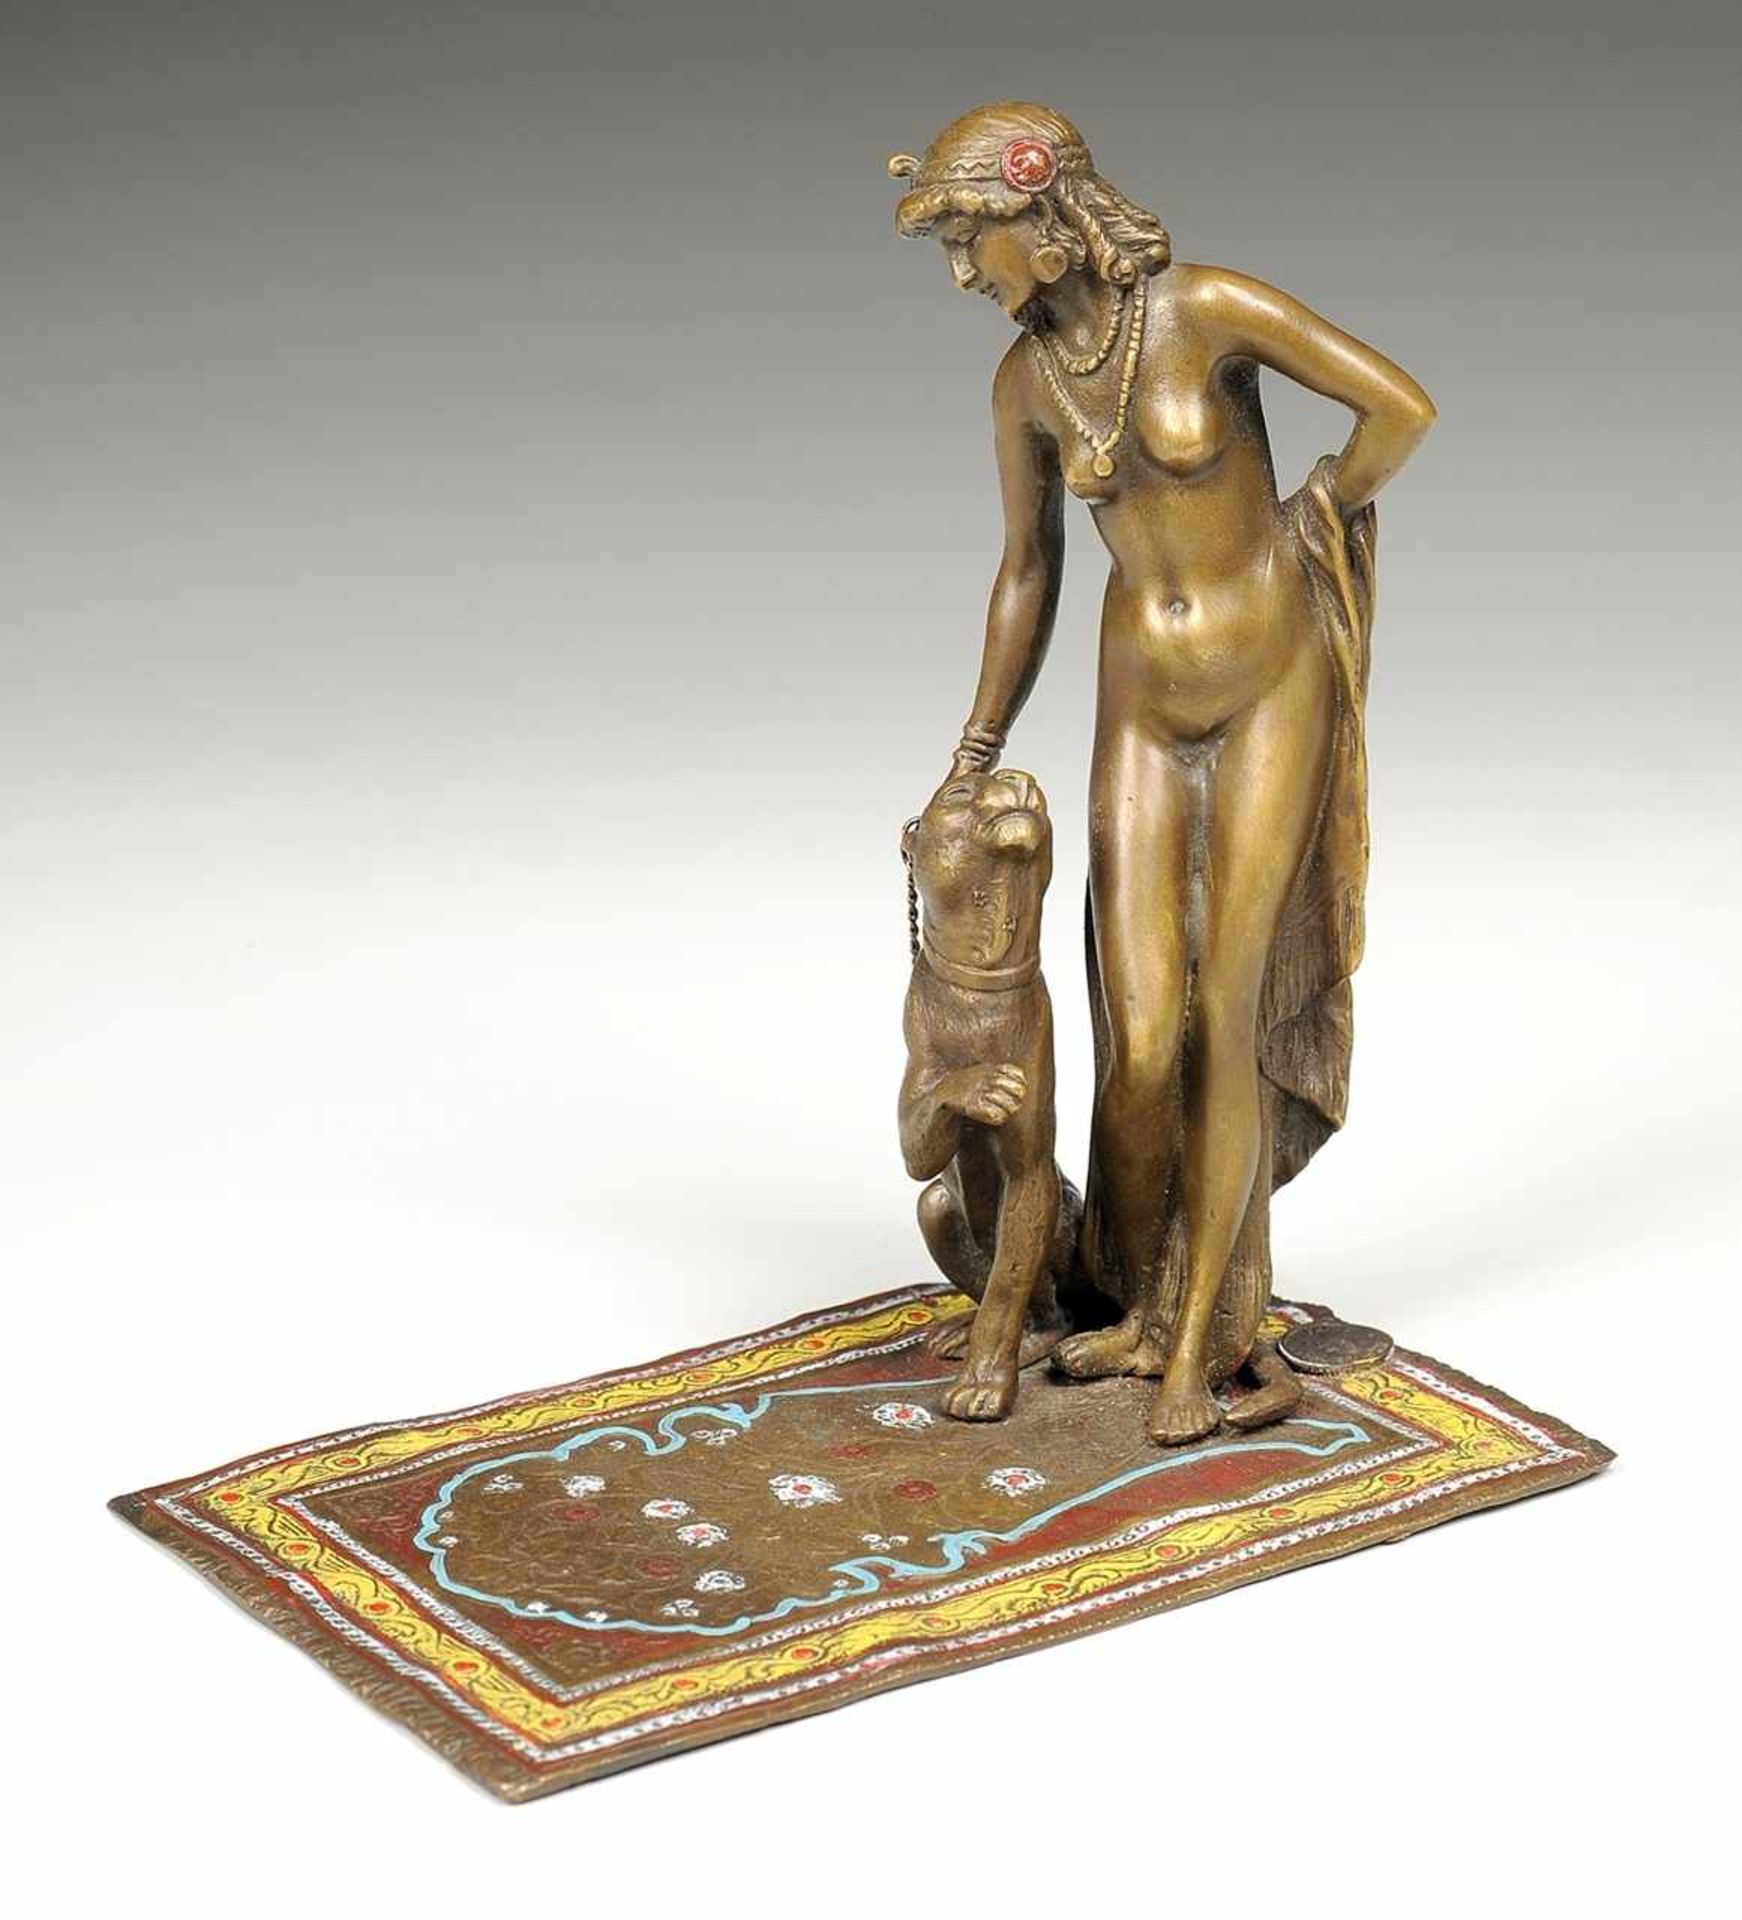 Unbekannt (Wiener Künstler, 1. V. 20. Jh.) Bronze, patiniert, part. farbig gefasst. Frauenakt mit